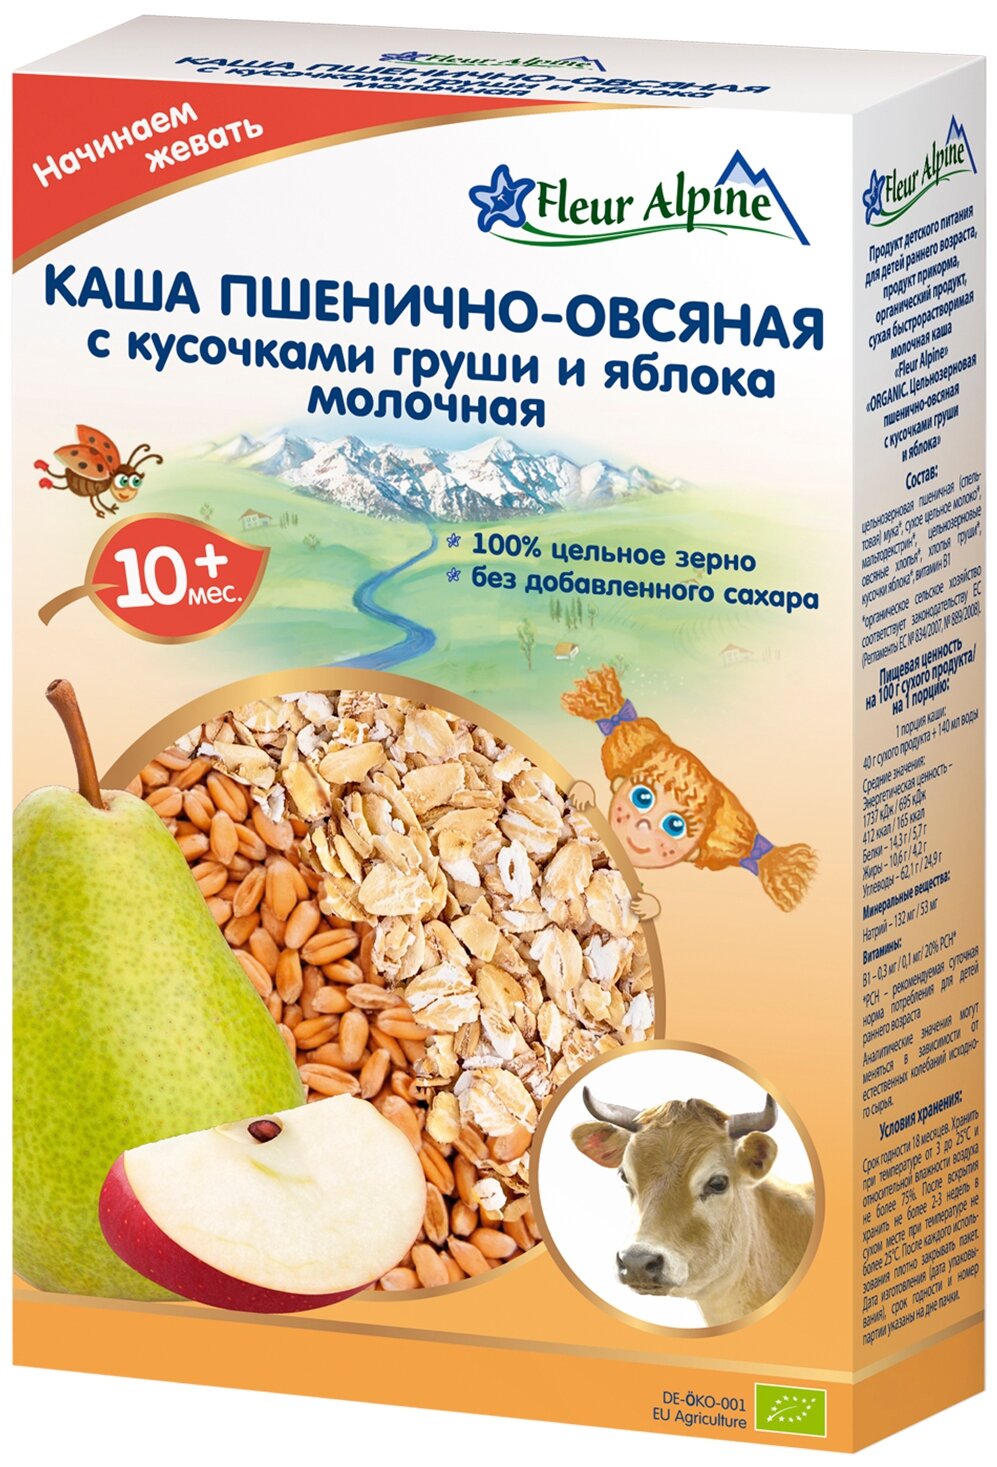 Каша Fleur Alpine, молочная пшенично-овсяная с кусочками груши и яблока 200 г - фото №1